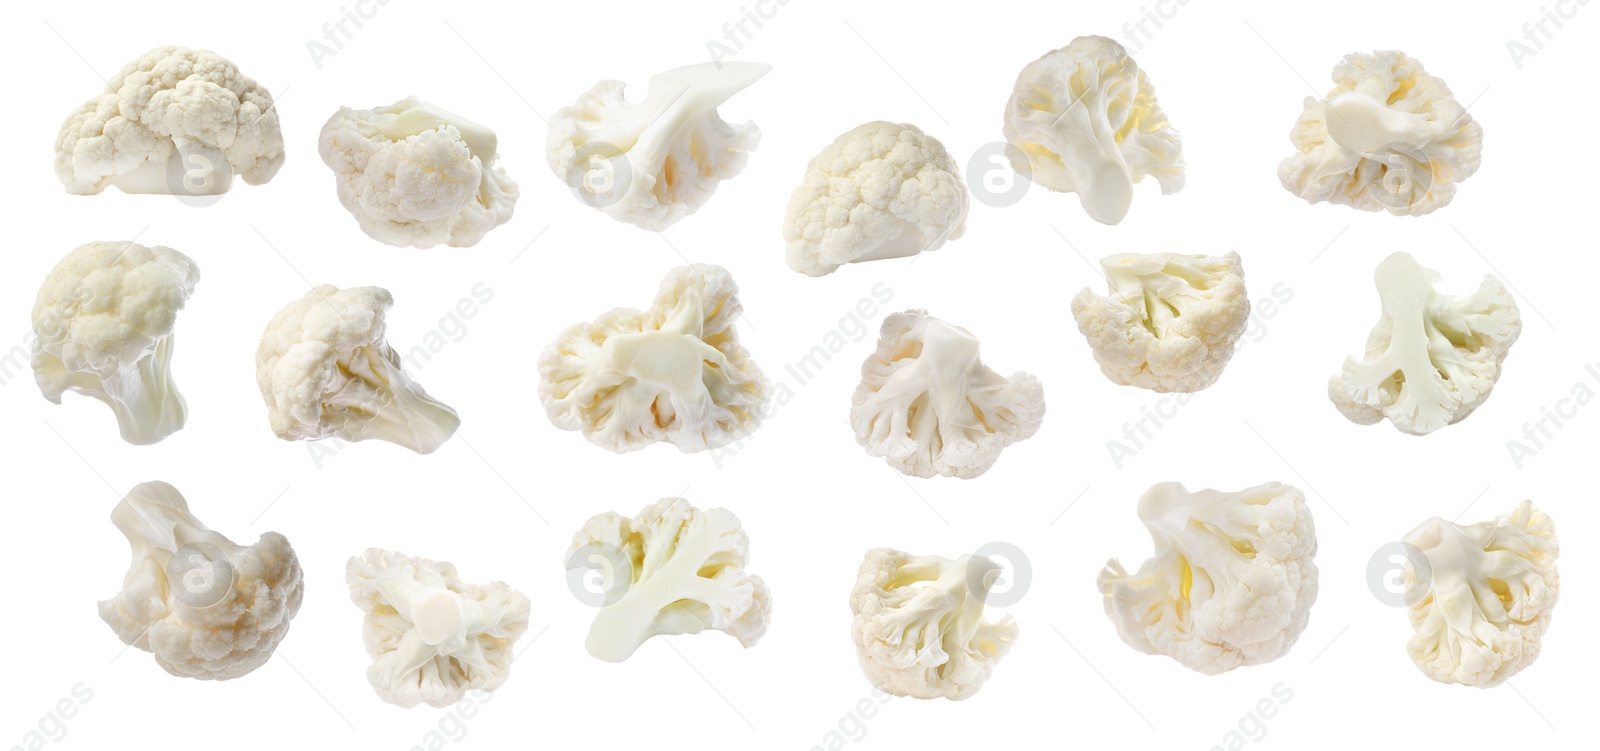 Image of Set of fresh cauliflower florets on white background